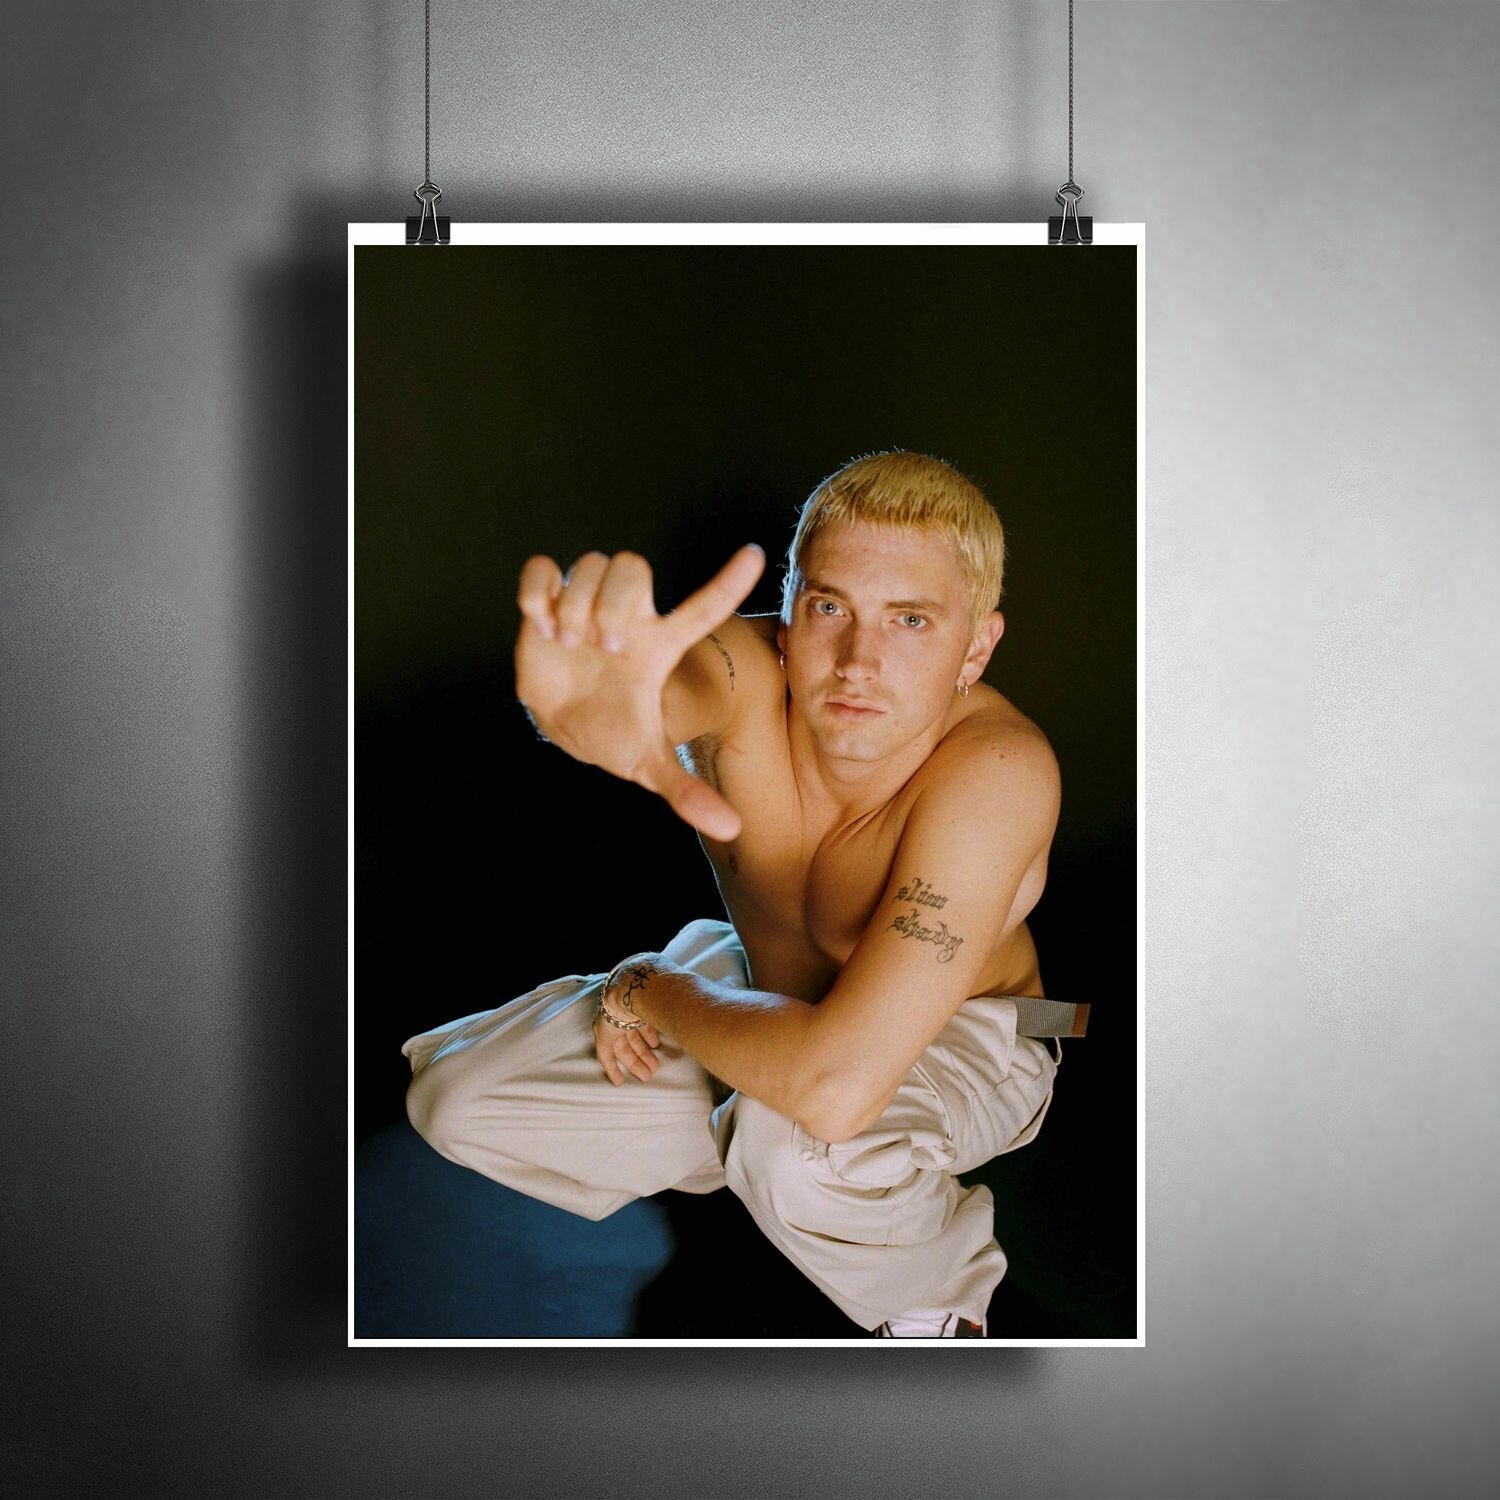 Постер плакат "Музыка: рэпер Эминем. Хип-хоп исполнитель Eminem" / Декор для дома, офиса, комнаты, квартиры, детской A3 (297 x 420 мм)